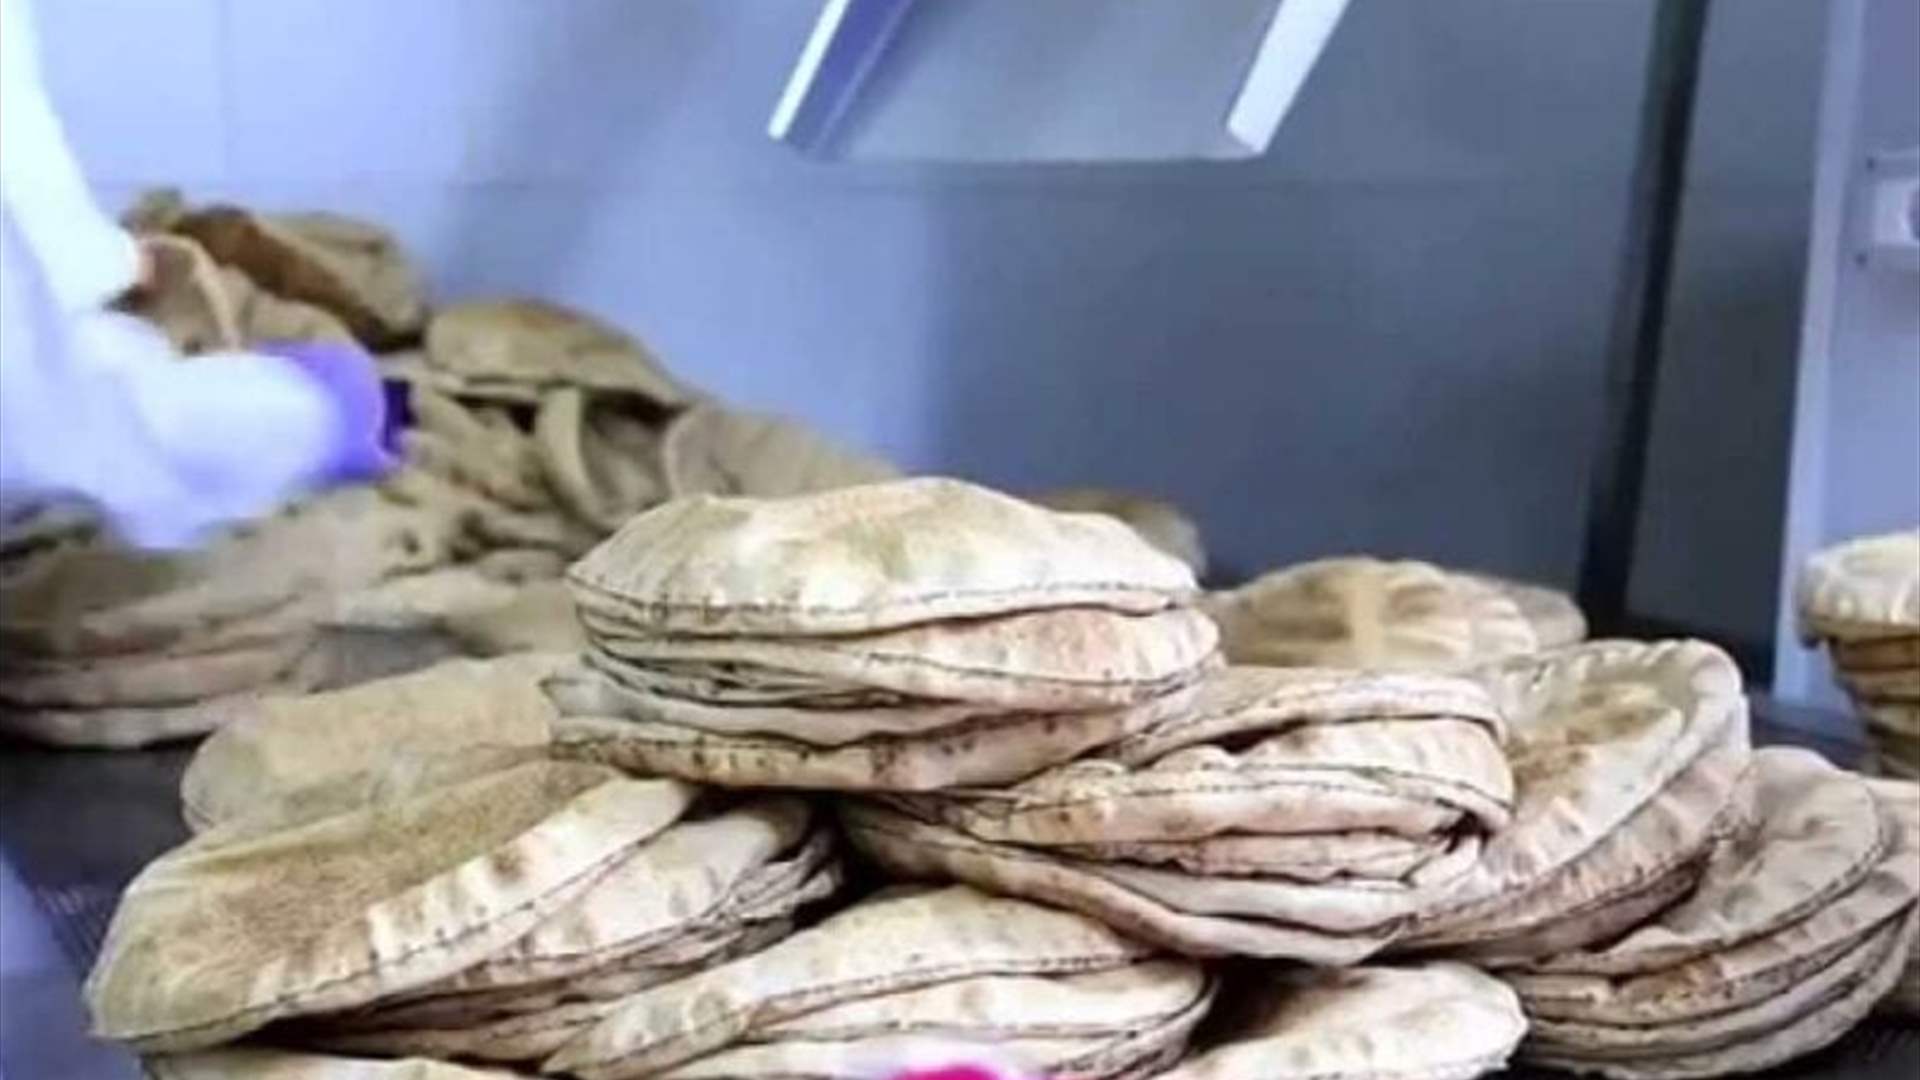 سرور: ارتفاع ربطة الخبز الف ليرة بسبب ارتفاع تسعير الطحين المدعوم